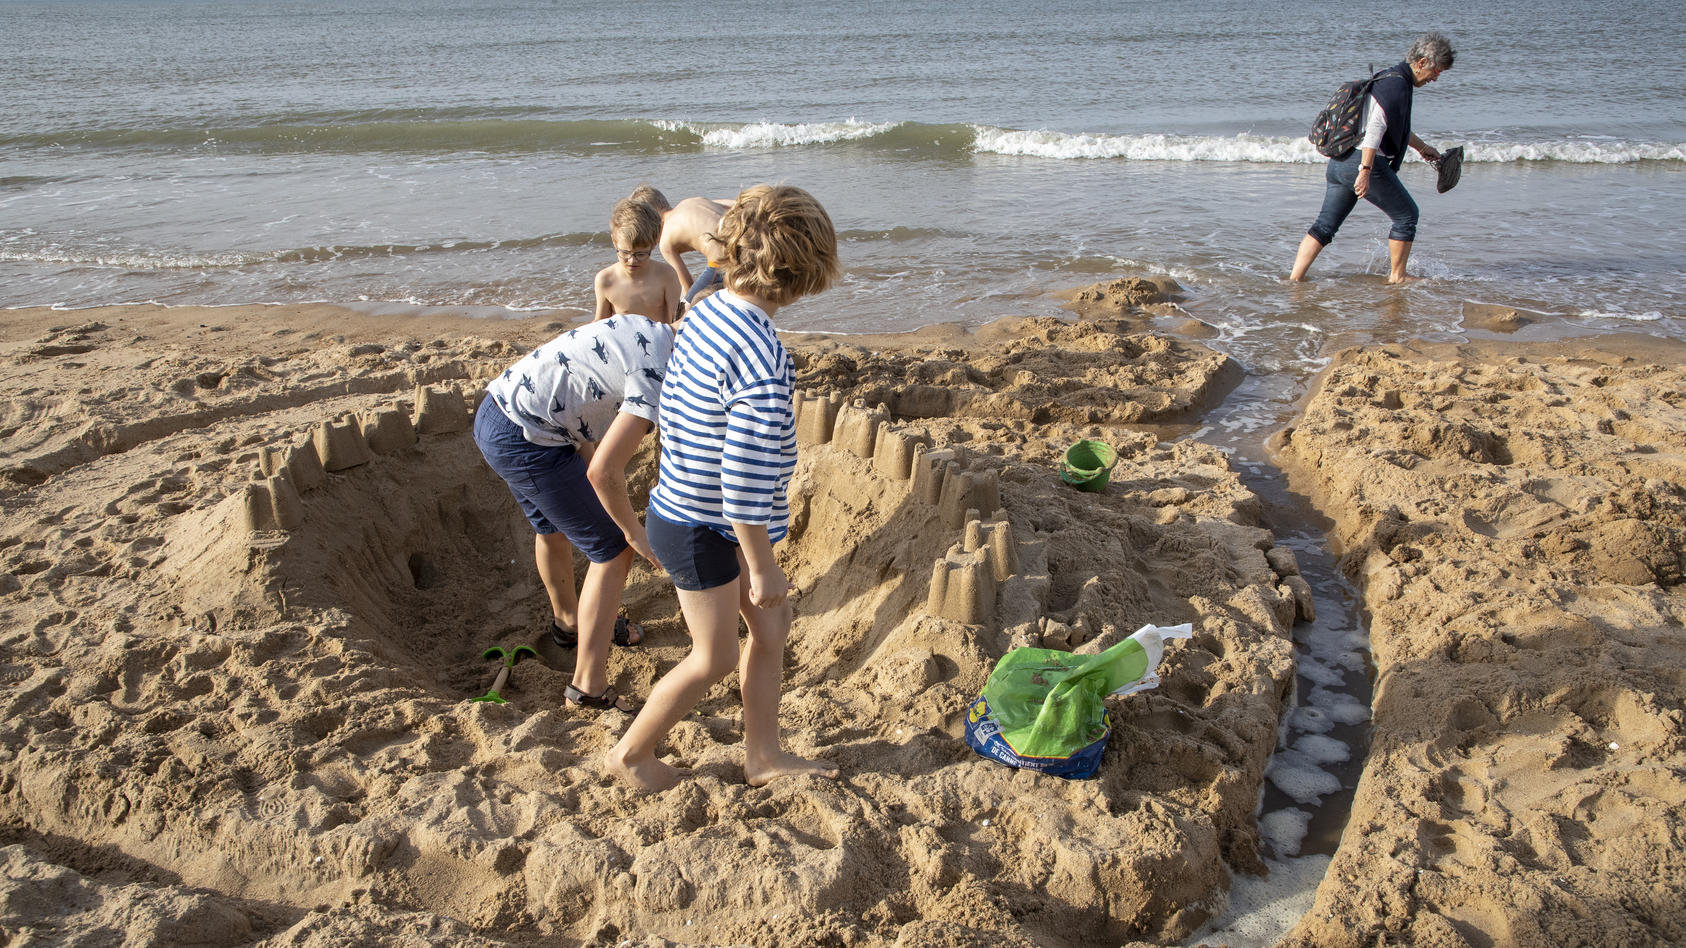 Kinder buddeln im Sand und bauen Sandburgen am Strand.